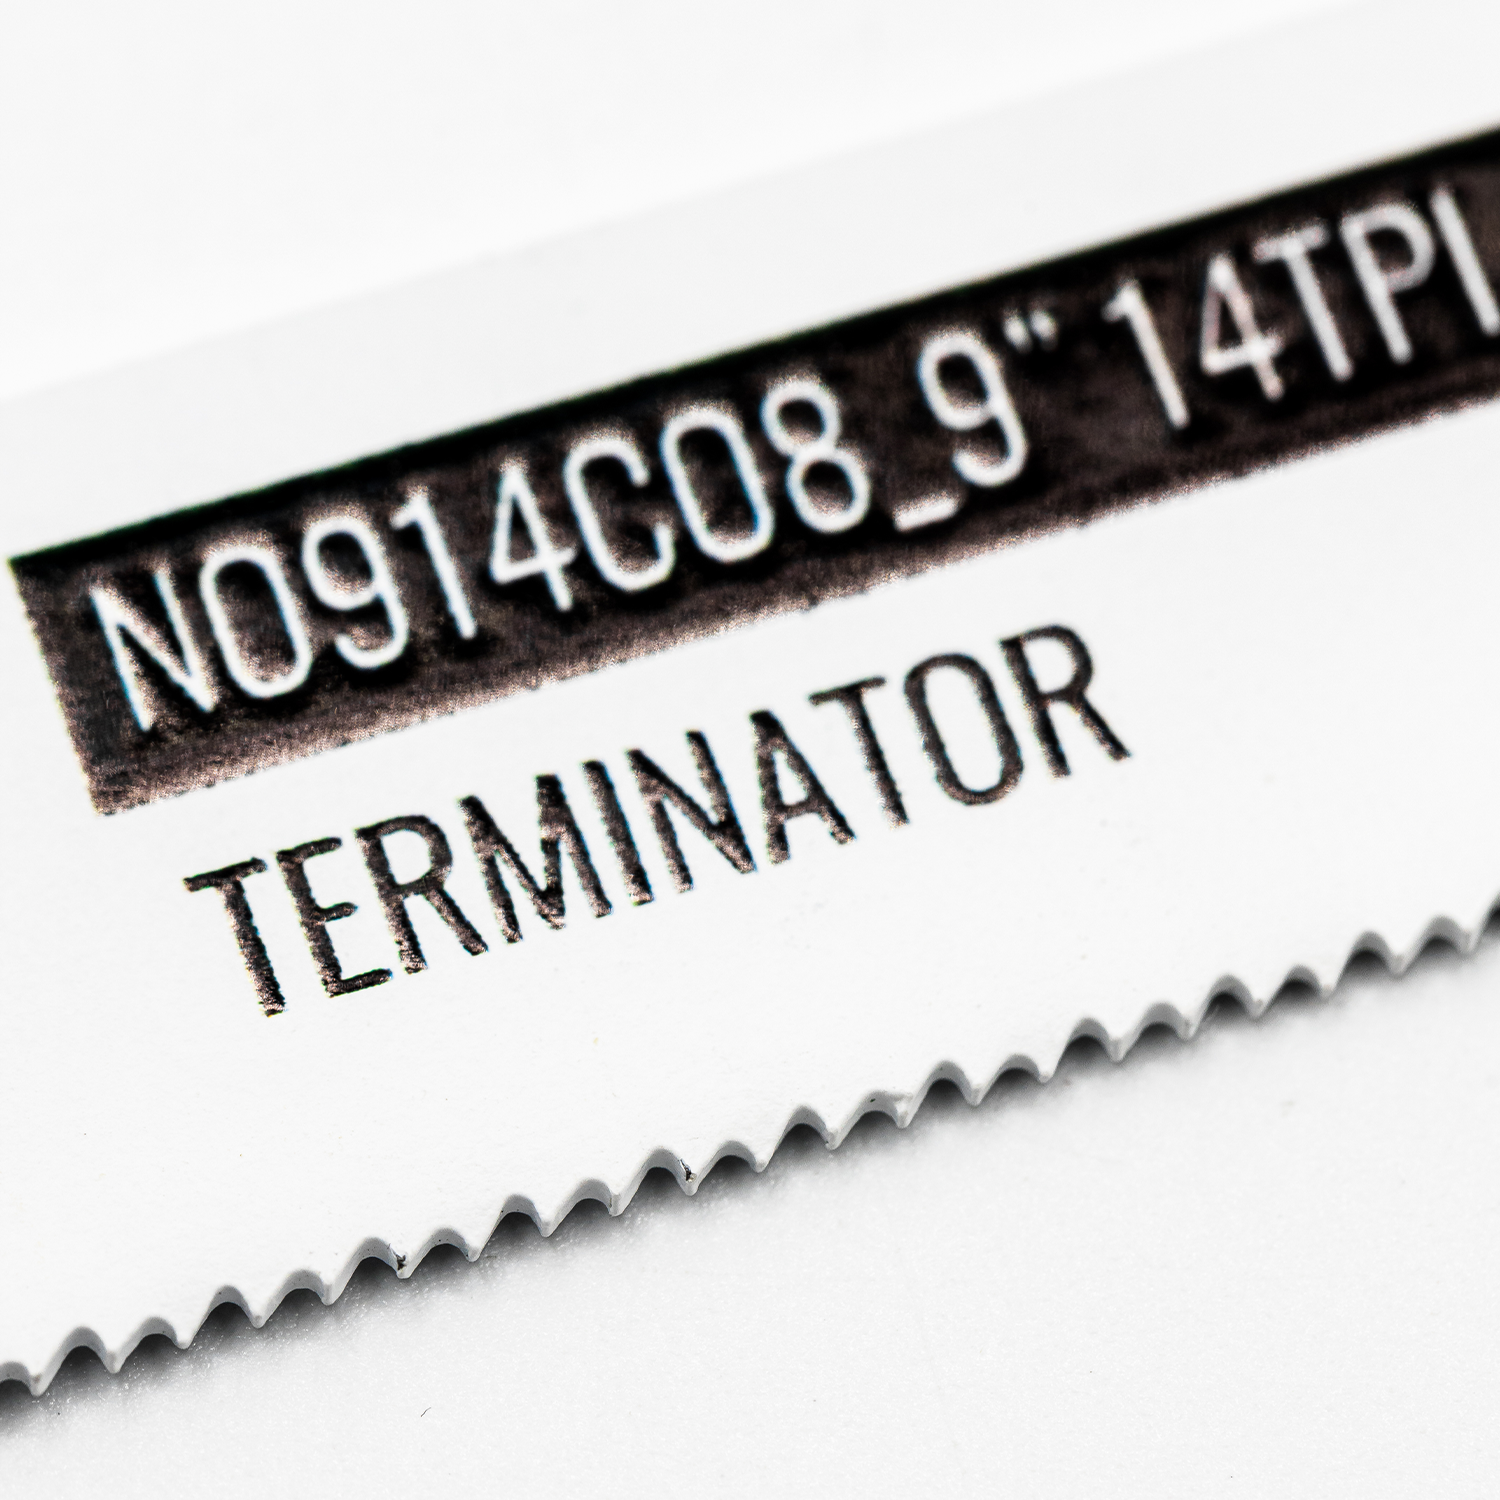 Terminator reciprozaagblad voor metaal 225mm